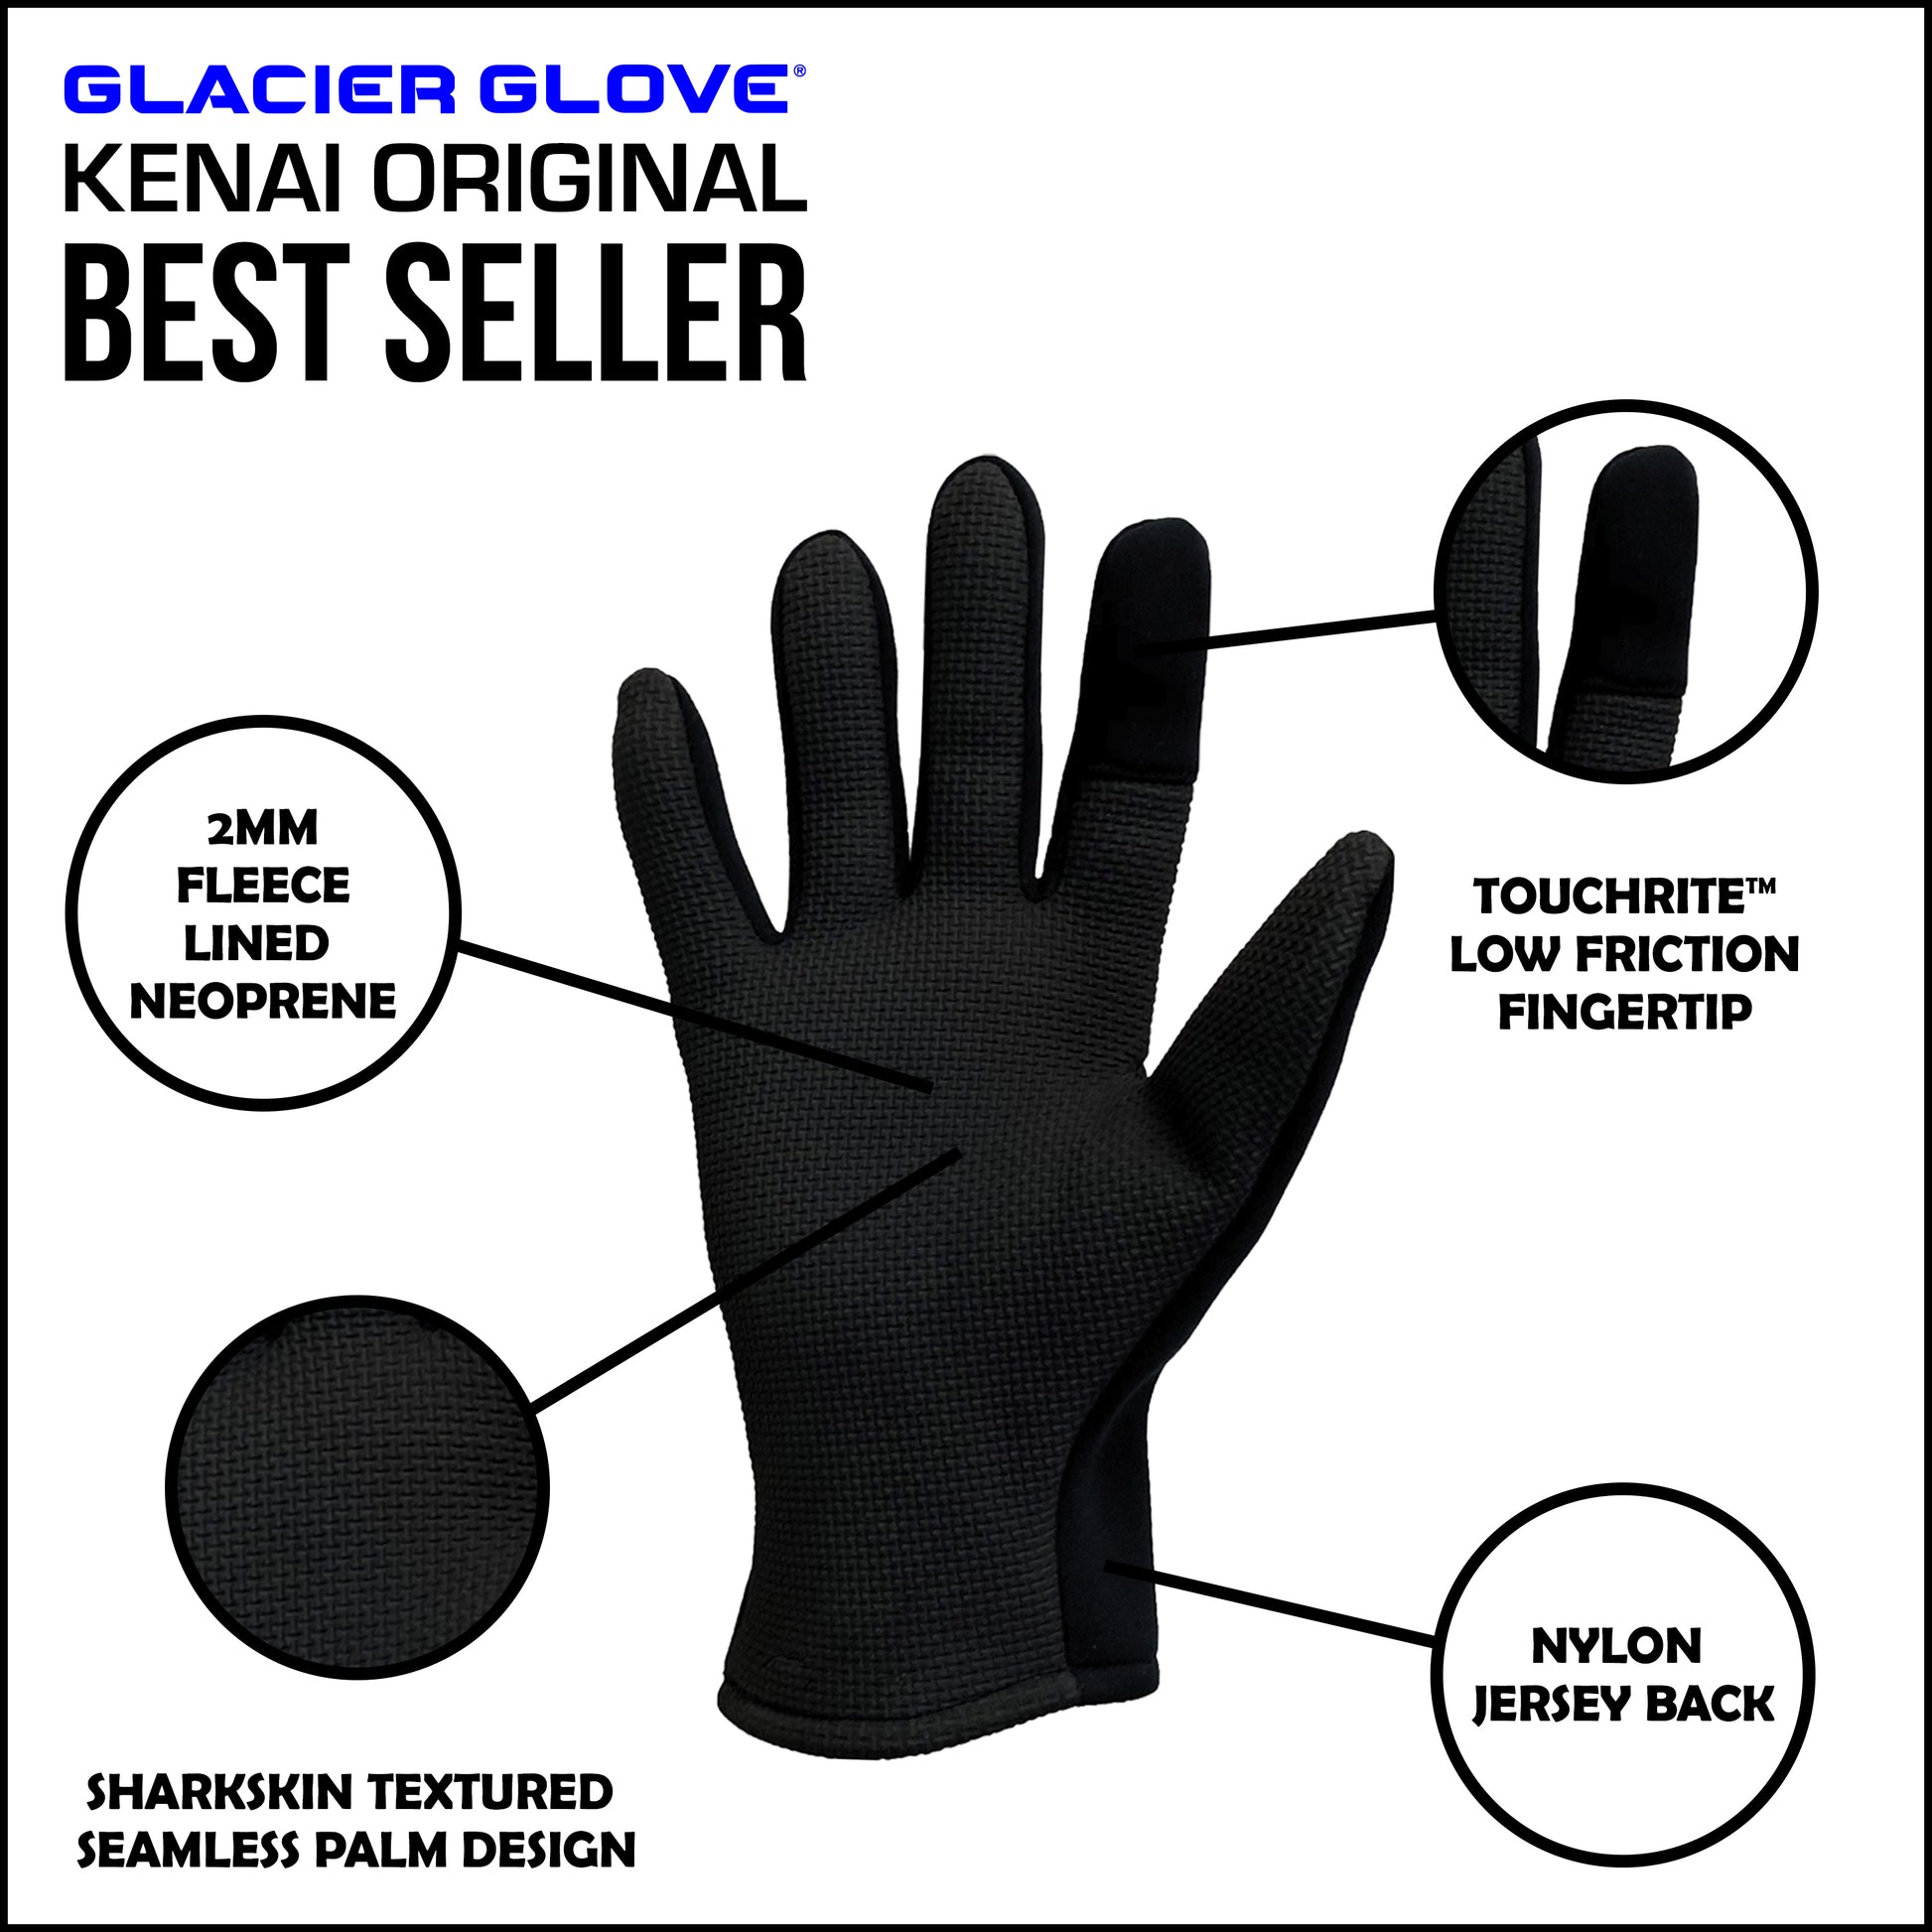 Kenai™ Original – Glacier Outdoor Products